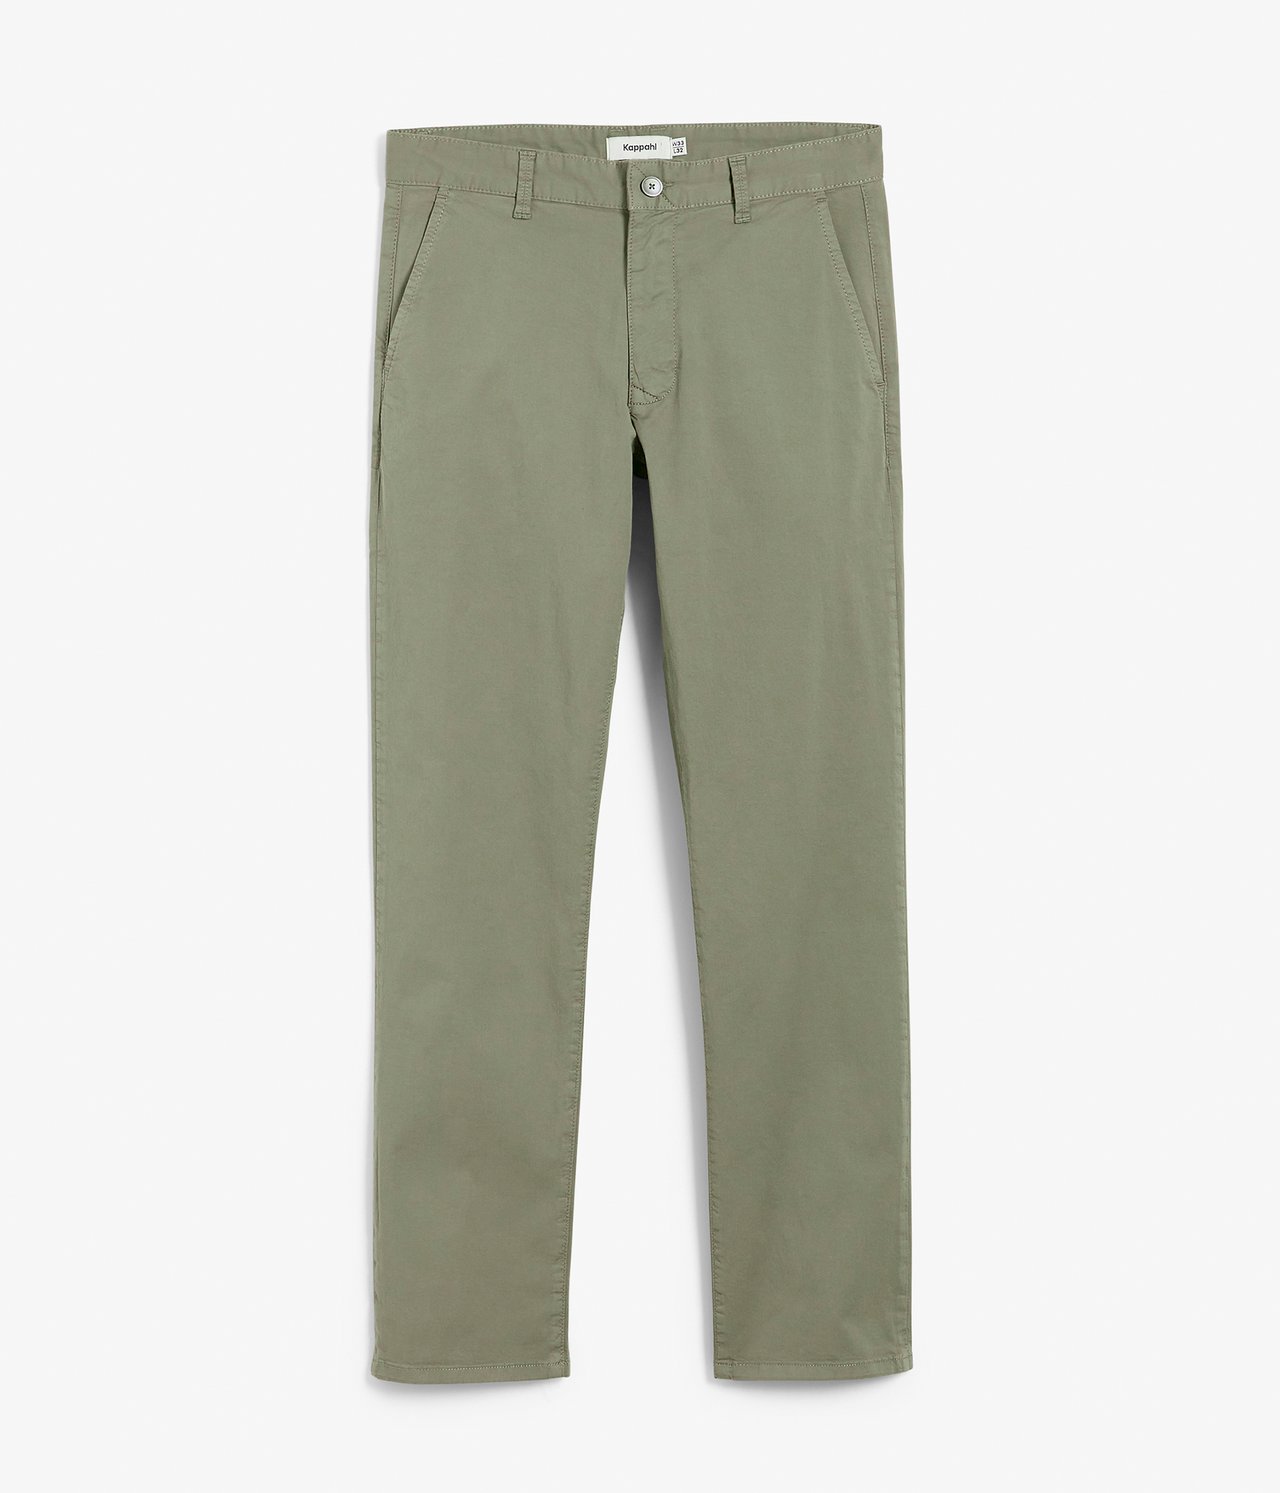 Spodnie chino regular fit - Zielony - 6